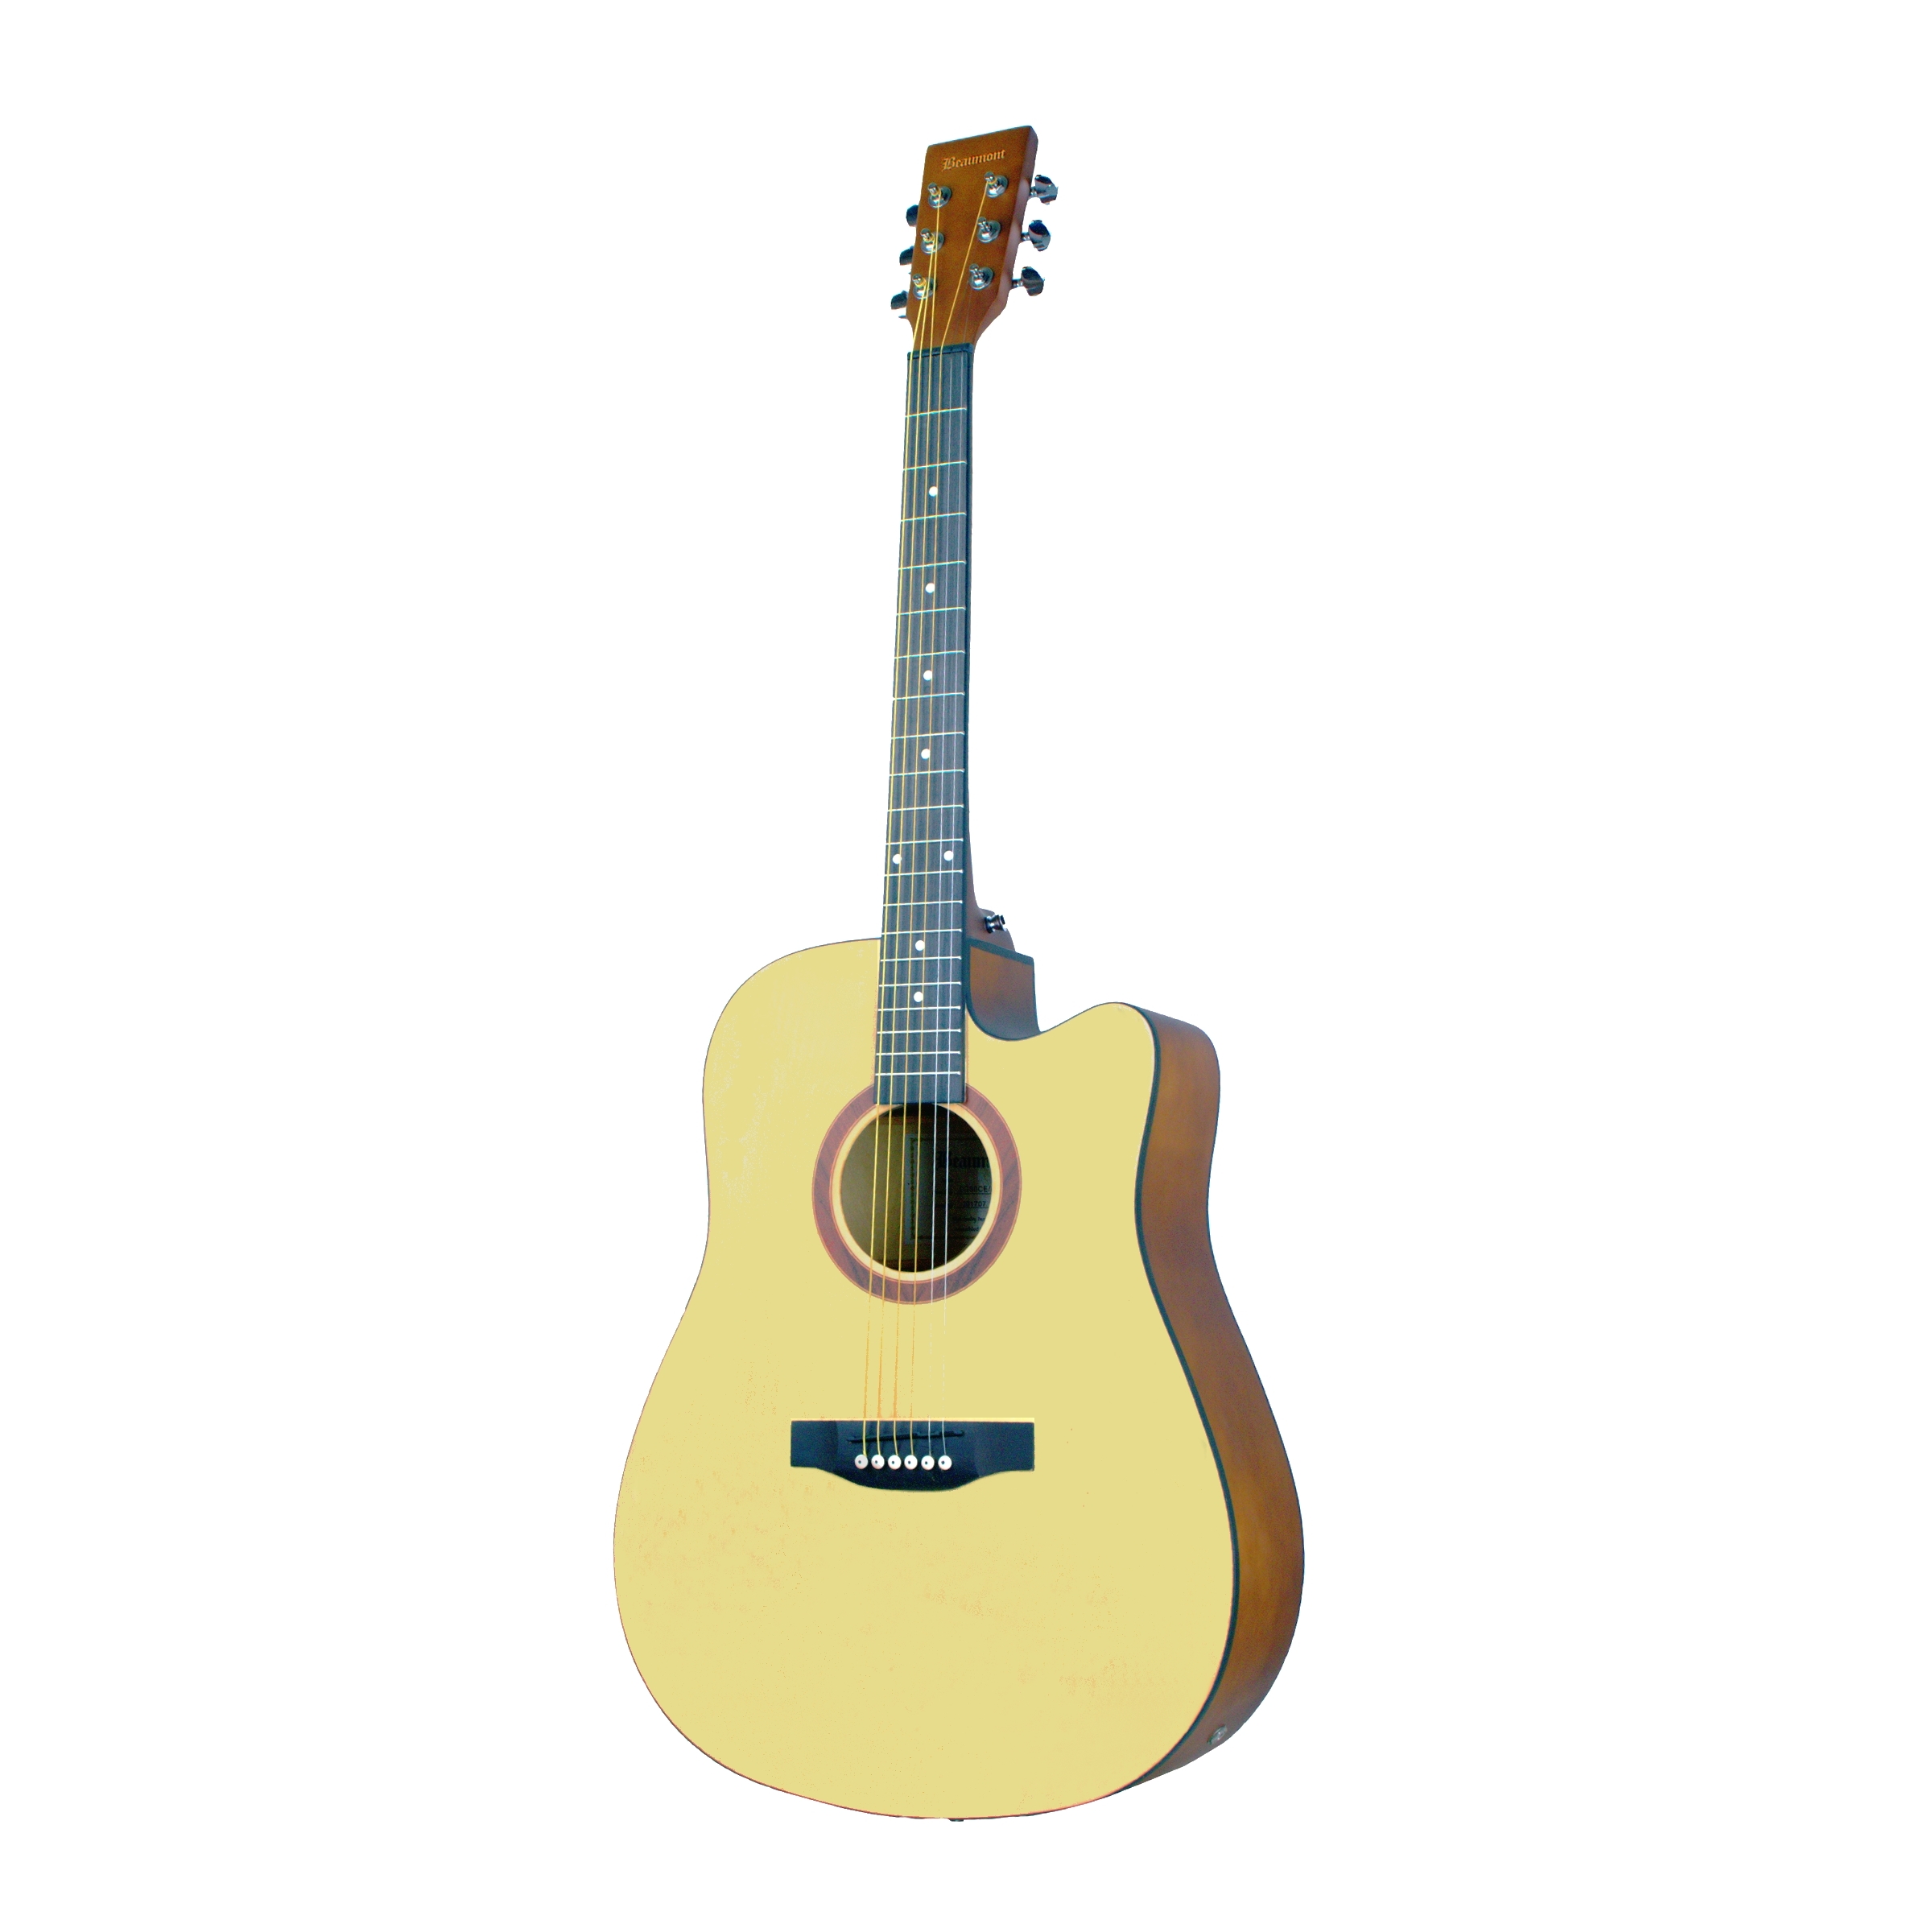 BEAUMONT DG80CE/NA - электроакустическая гитара с вырезом, корпус липа, цвет натуральный, матовый 